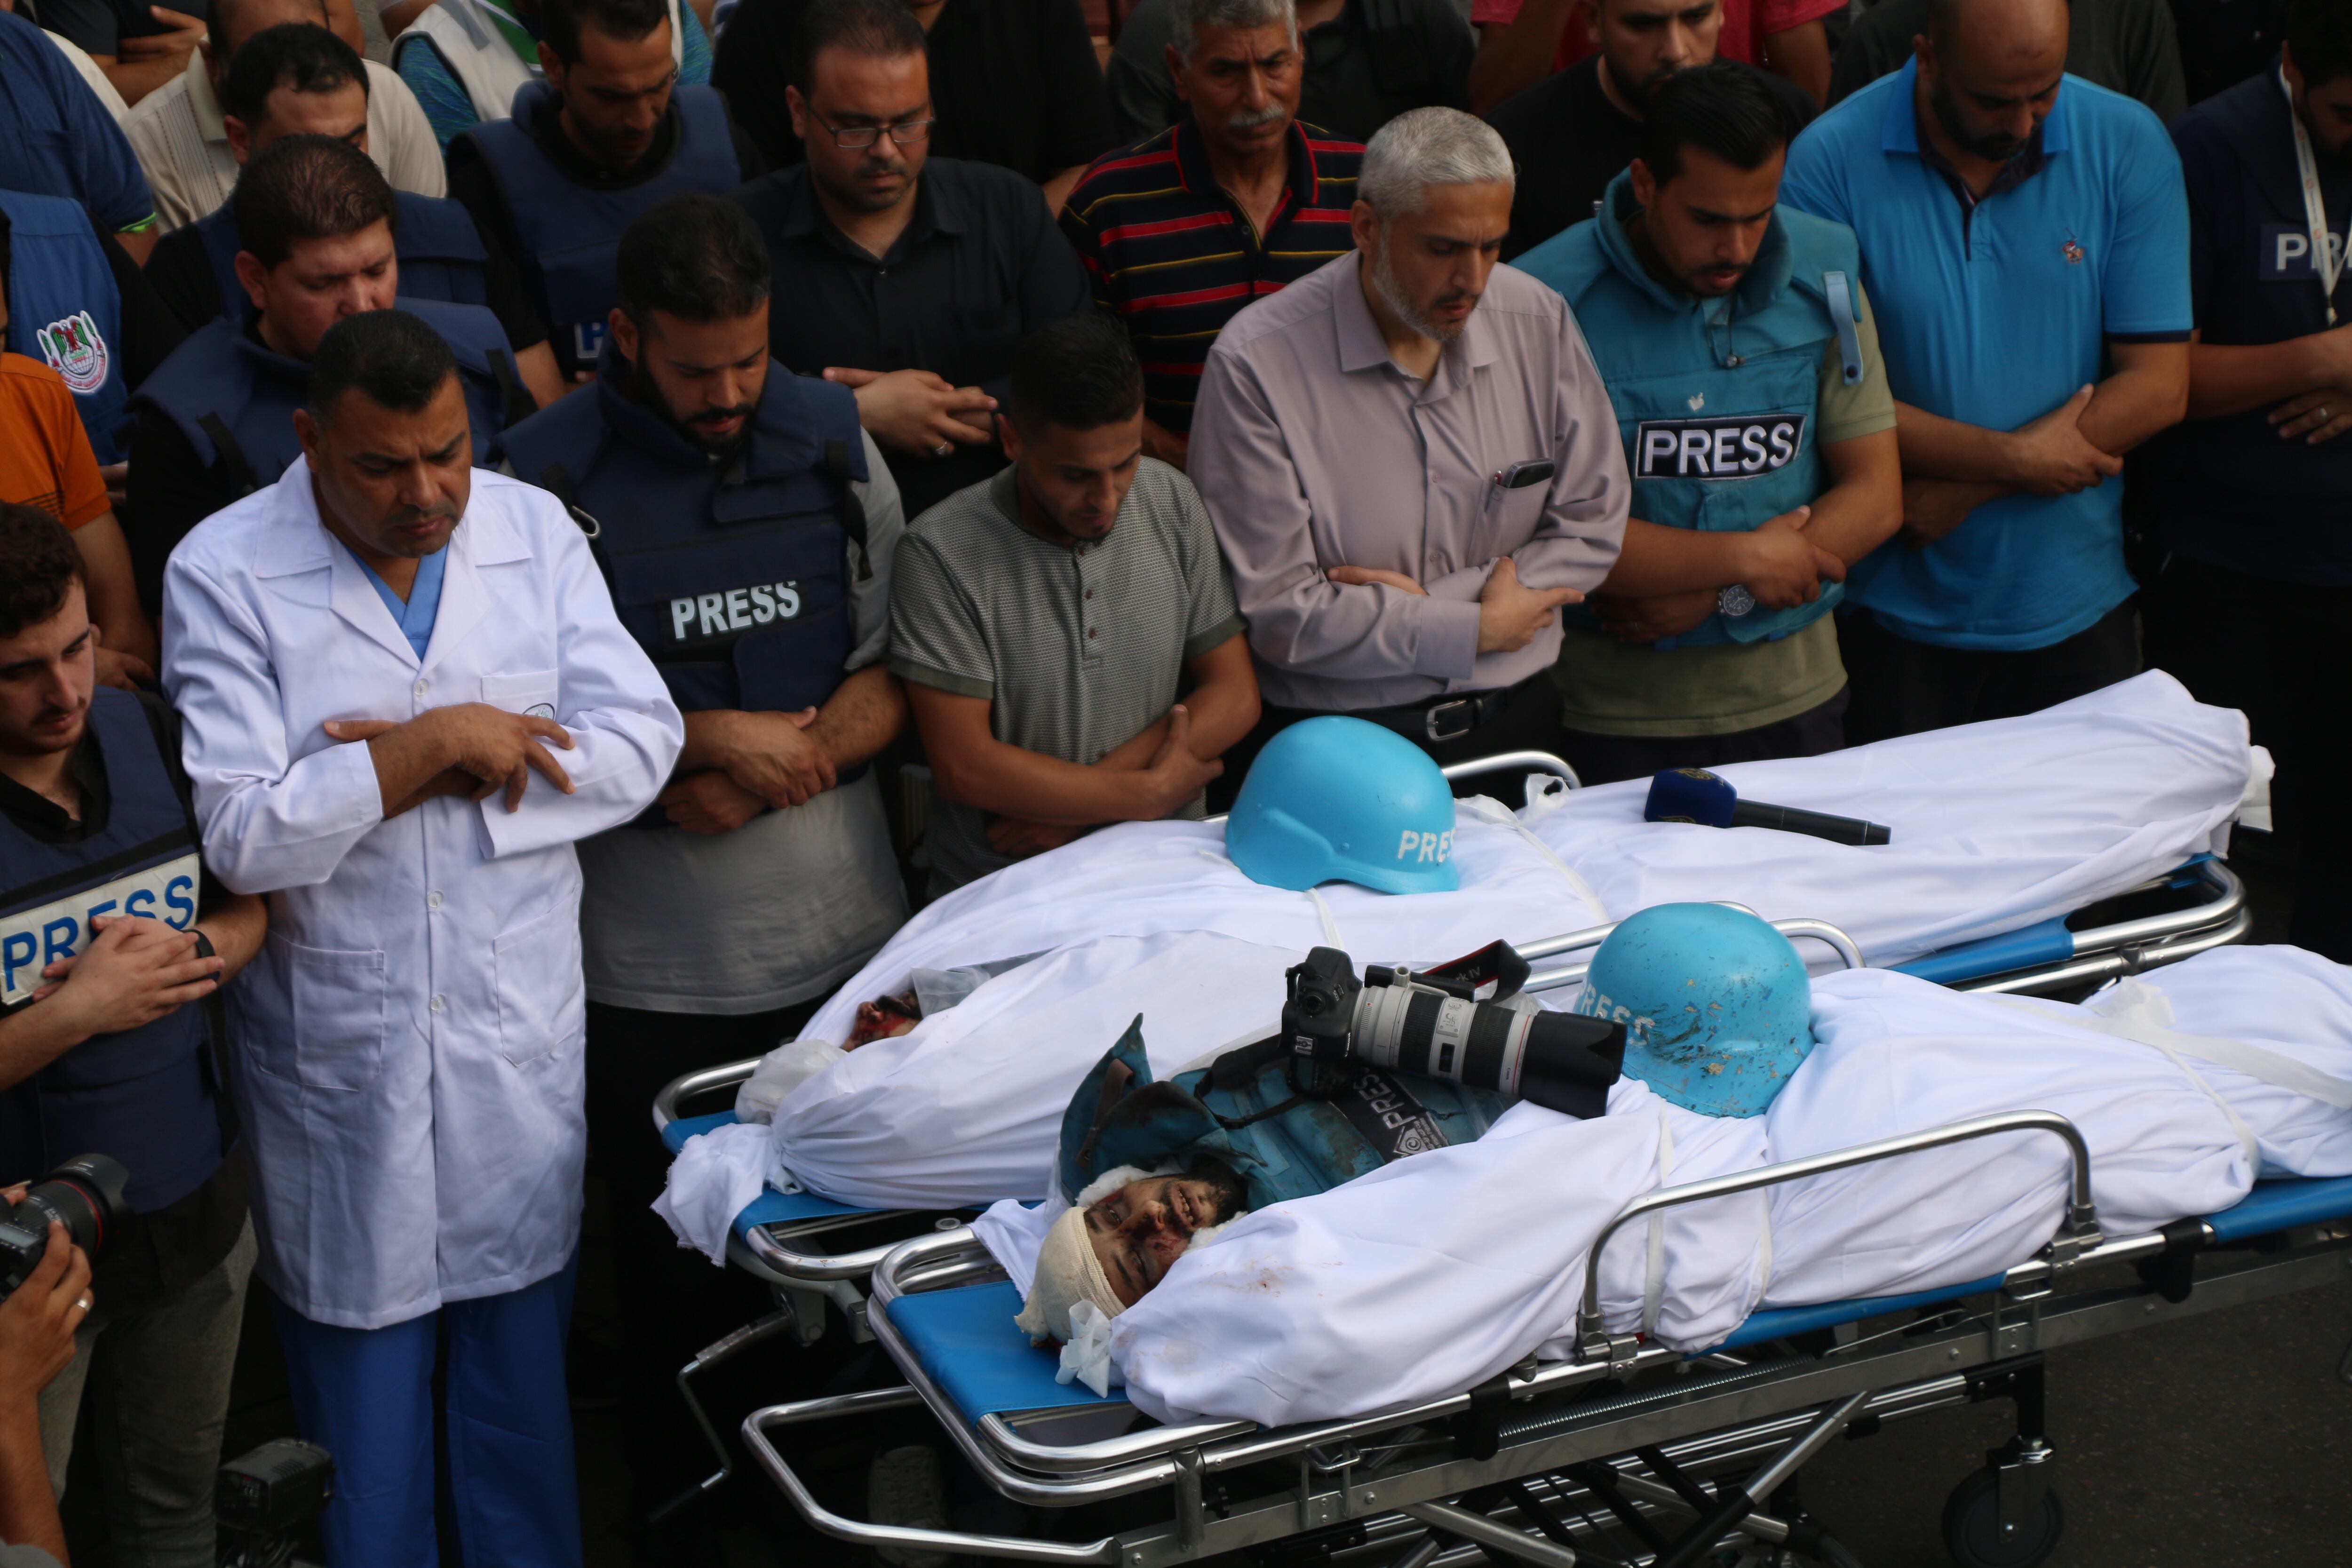 Familiares y amigos velaban este martes los cuerpos de los periodistas palestinos fallecidos mientras cubrían el conflicto en Gaza.